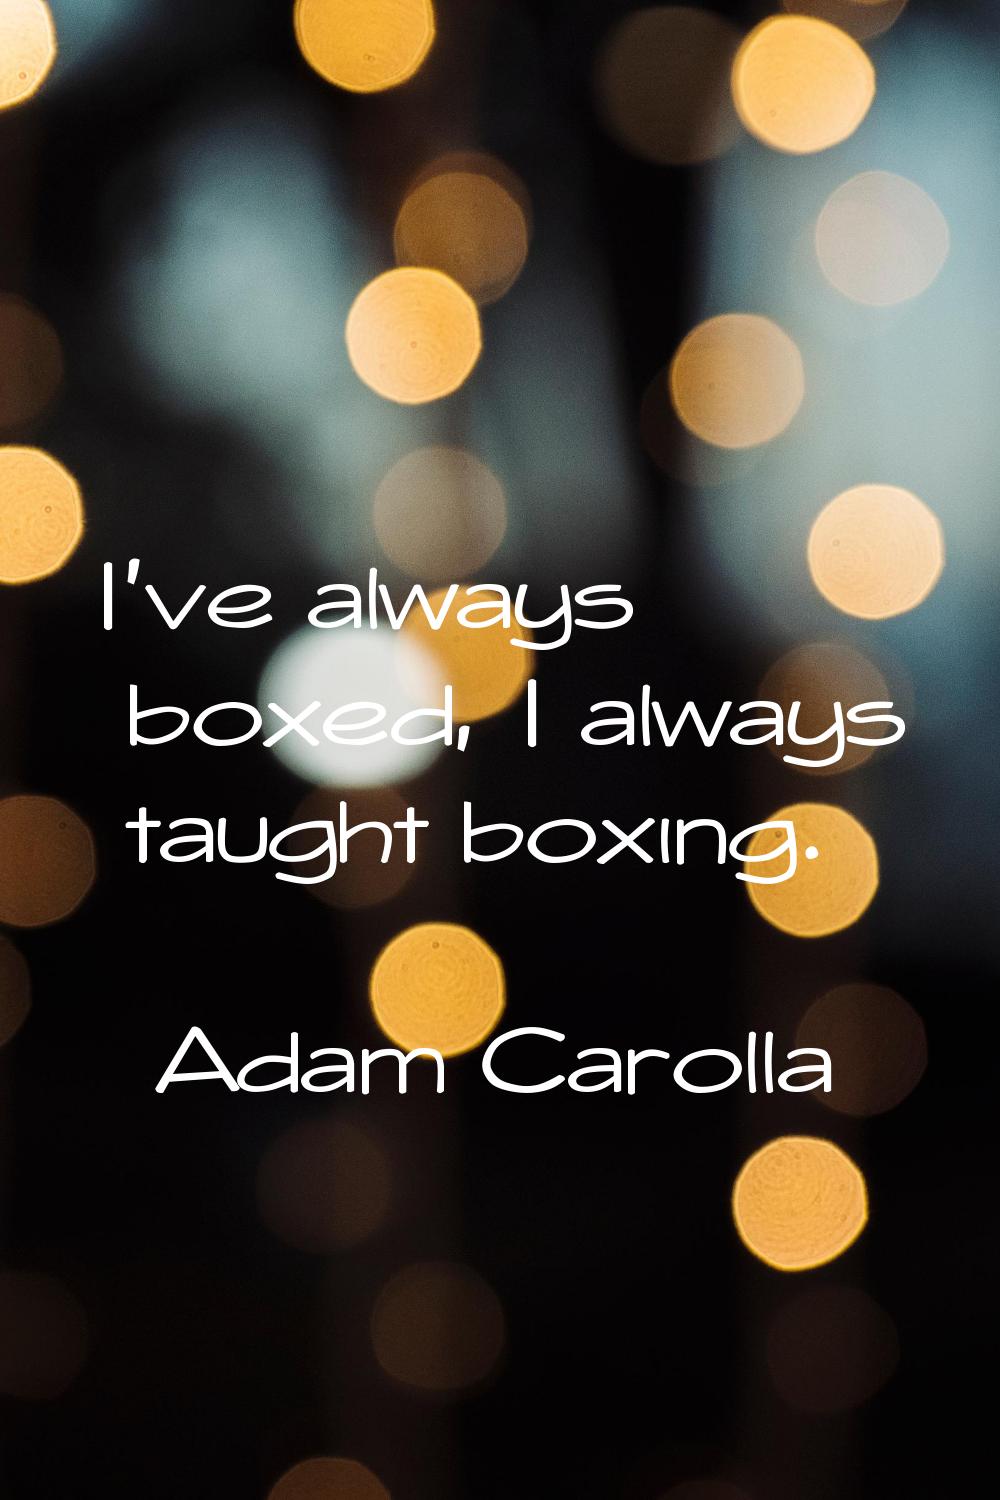 I've always boxed, I always taught boxing.